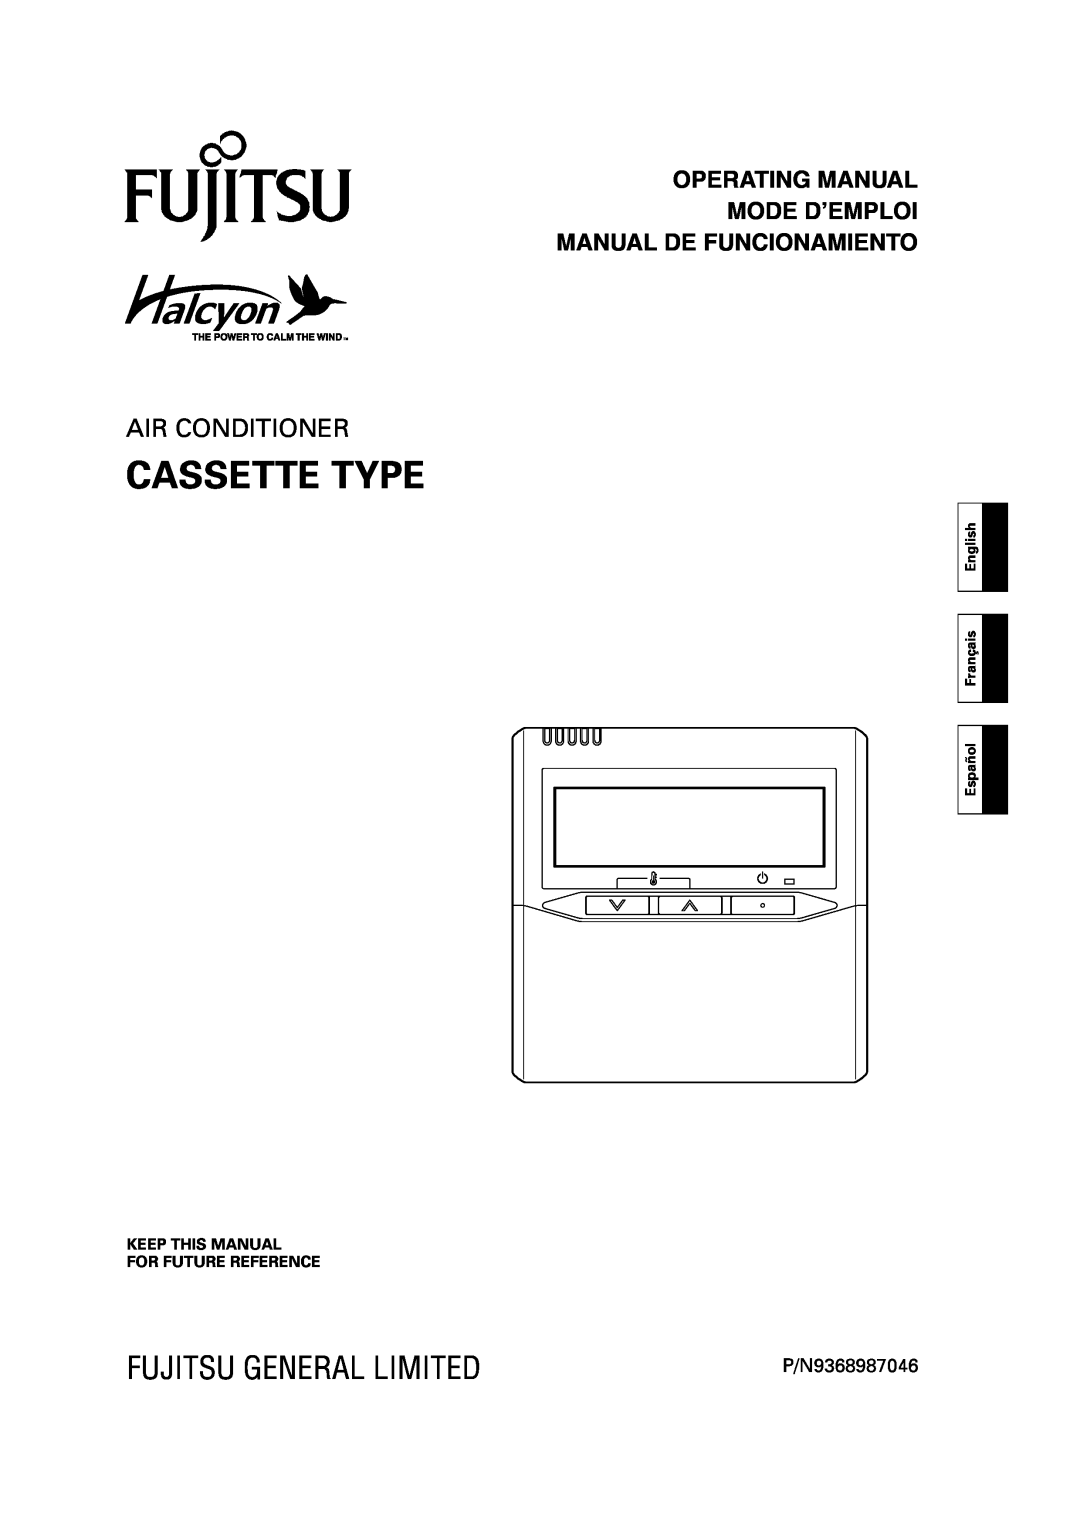 Fujitsu AIR CONDITIONER CASSETTE TYPE manual Cassette Type, Fujitsu General Limited, Air Conditioner, P/N9368987046 